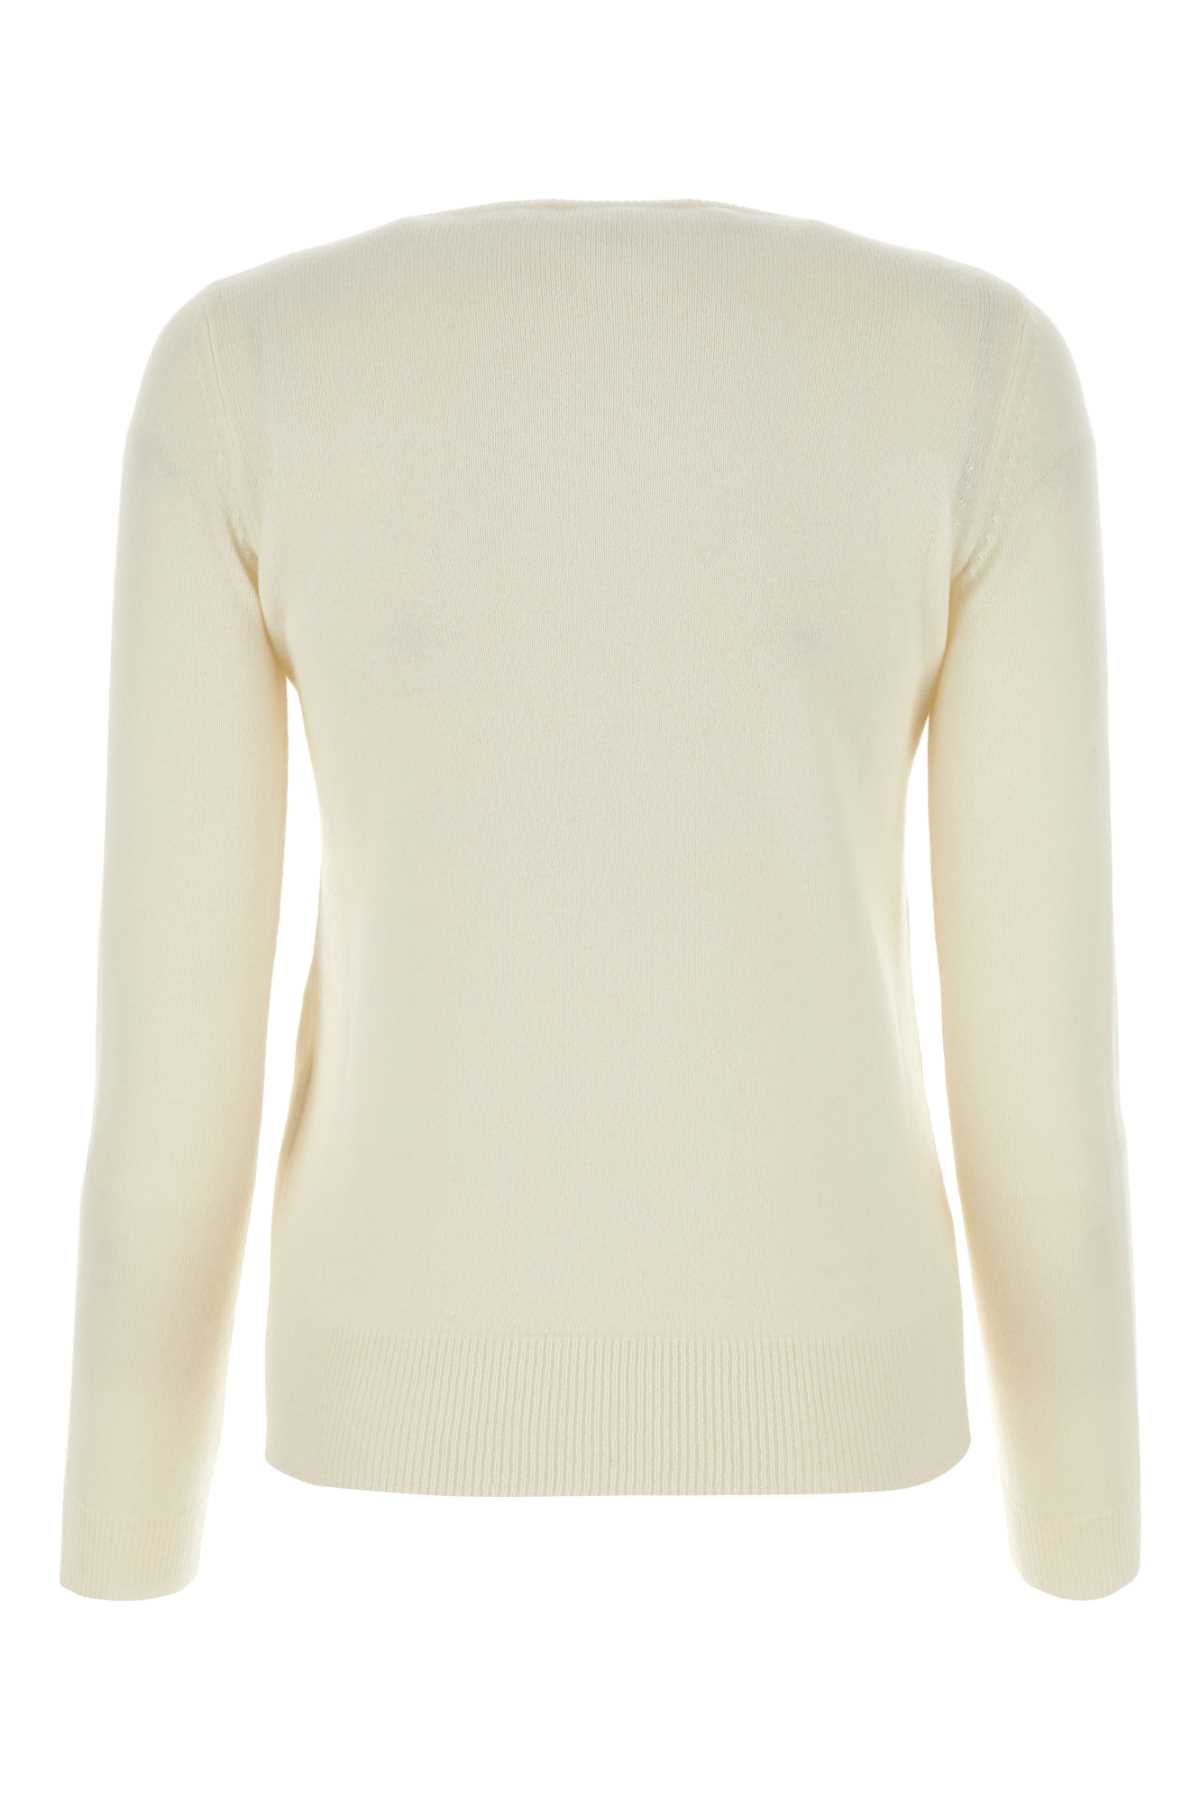 Max Mara Ivory Wool Blend Bari Sweater In Bianco